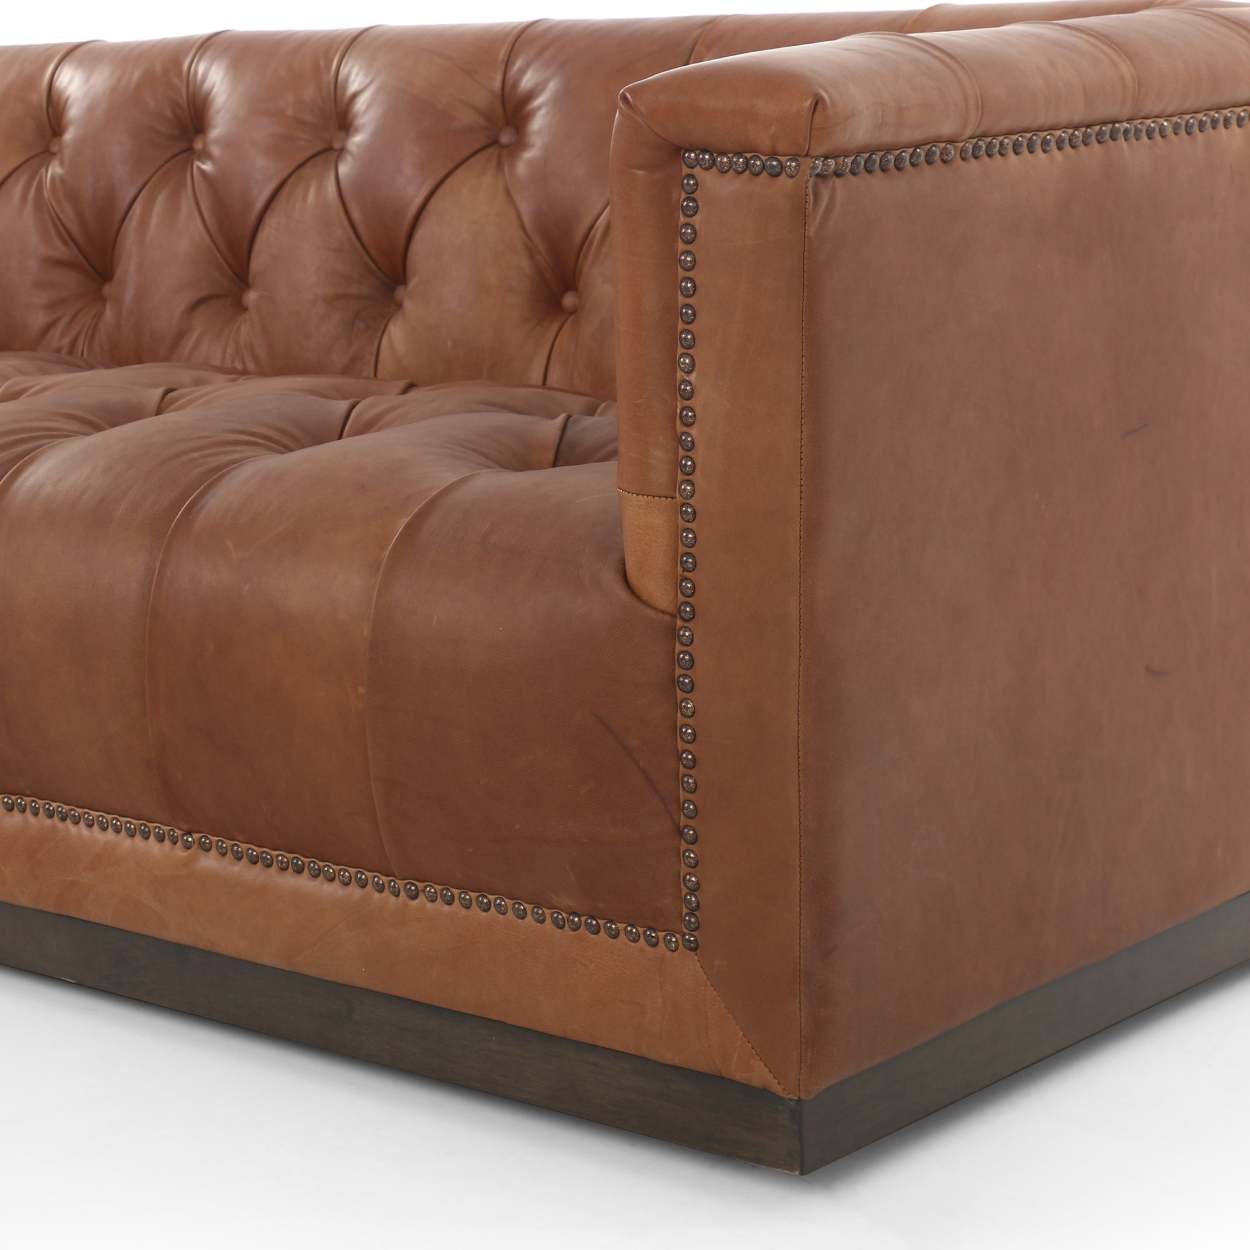 Arlo Leather Sofa Magnolia